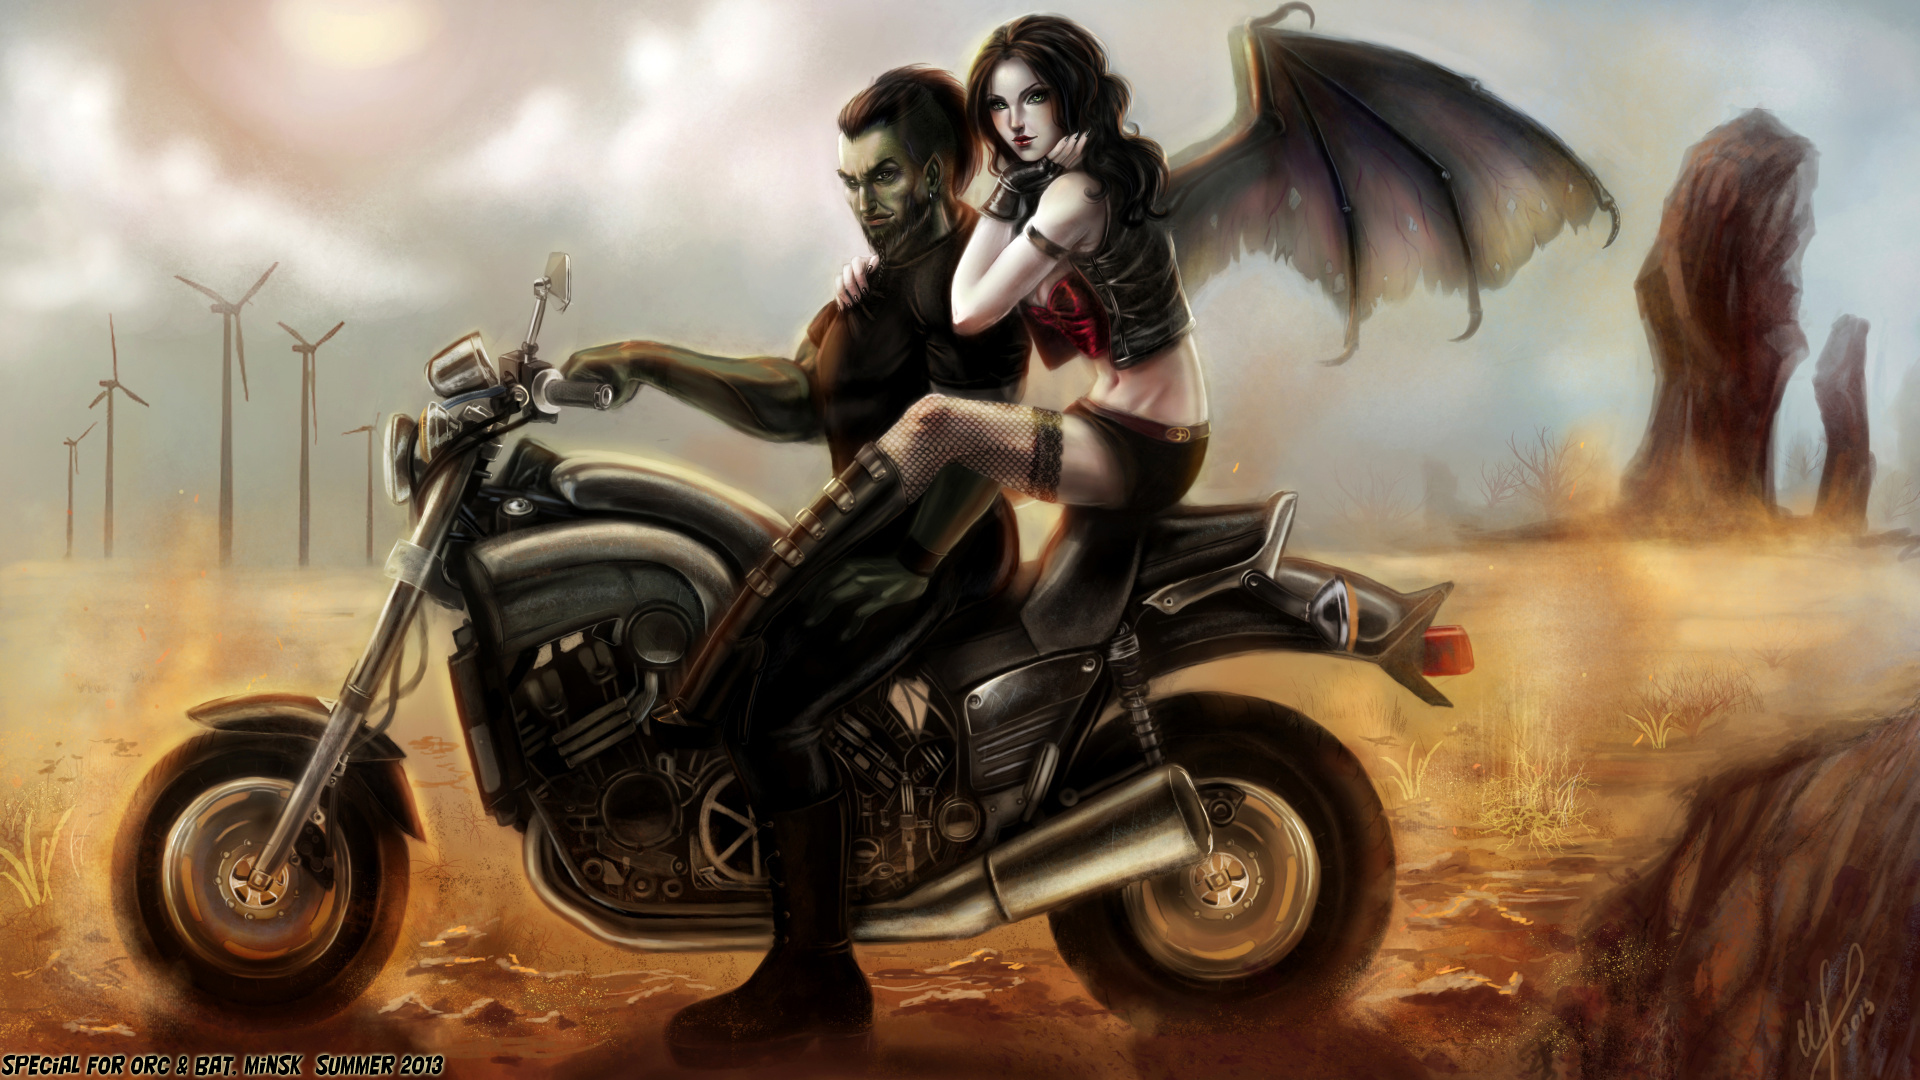 vampire, Men, Wings, Fantasy, Motorcycle, Girls, Fantasy Wallpaper